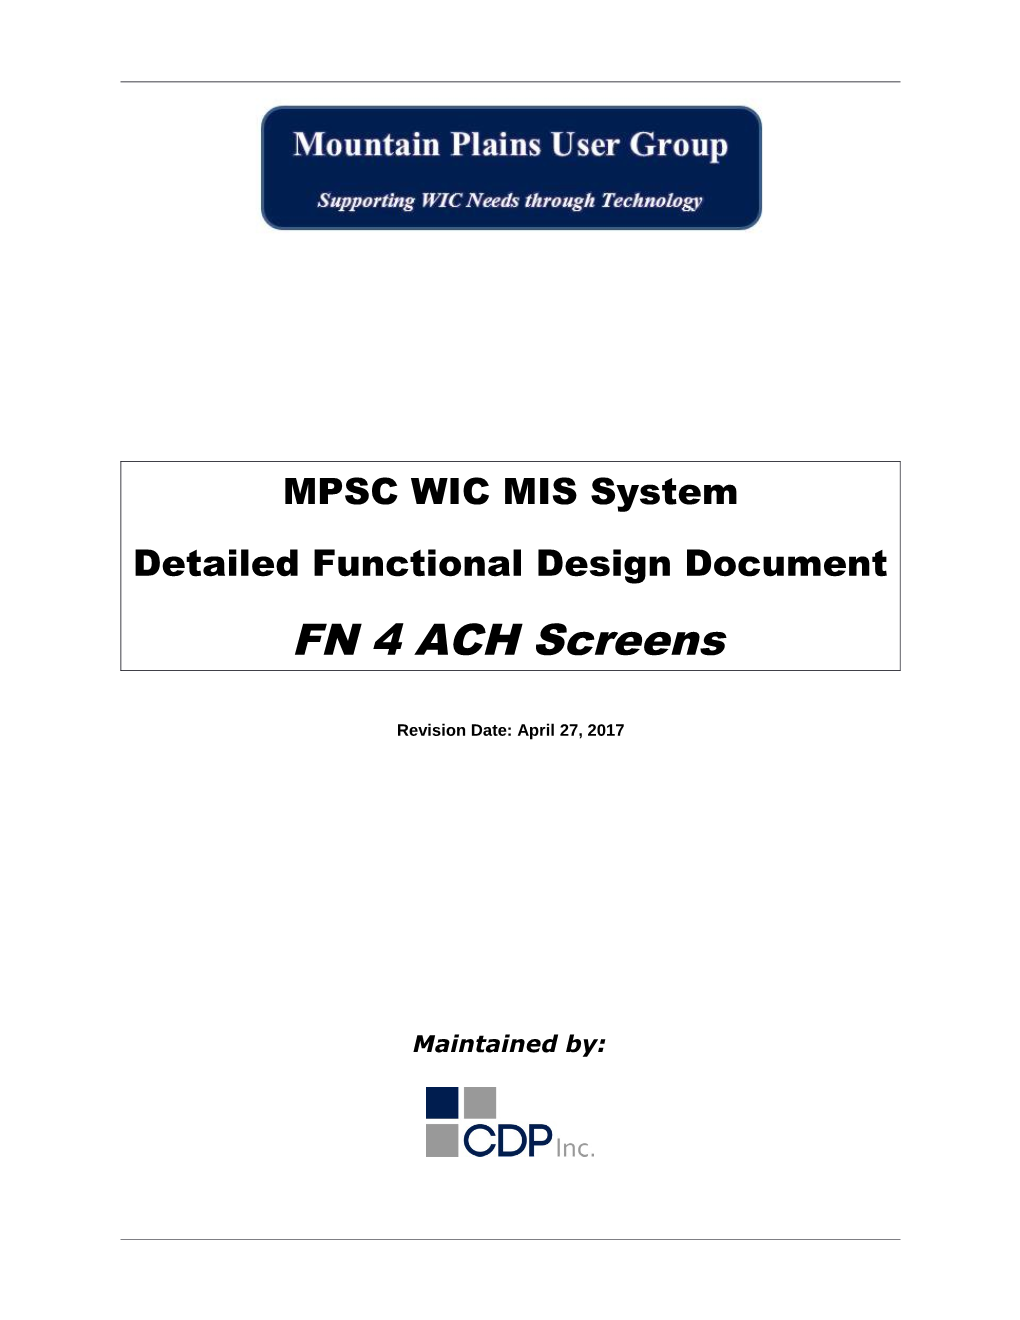 FN 4 ACH Screens